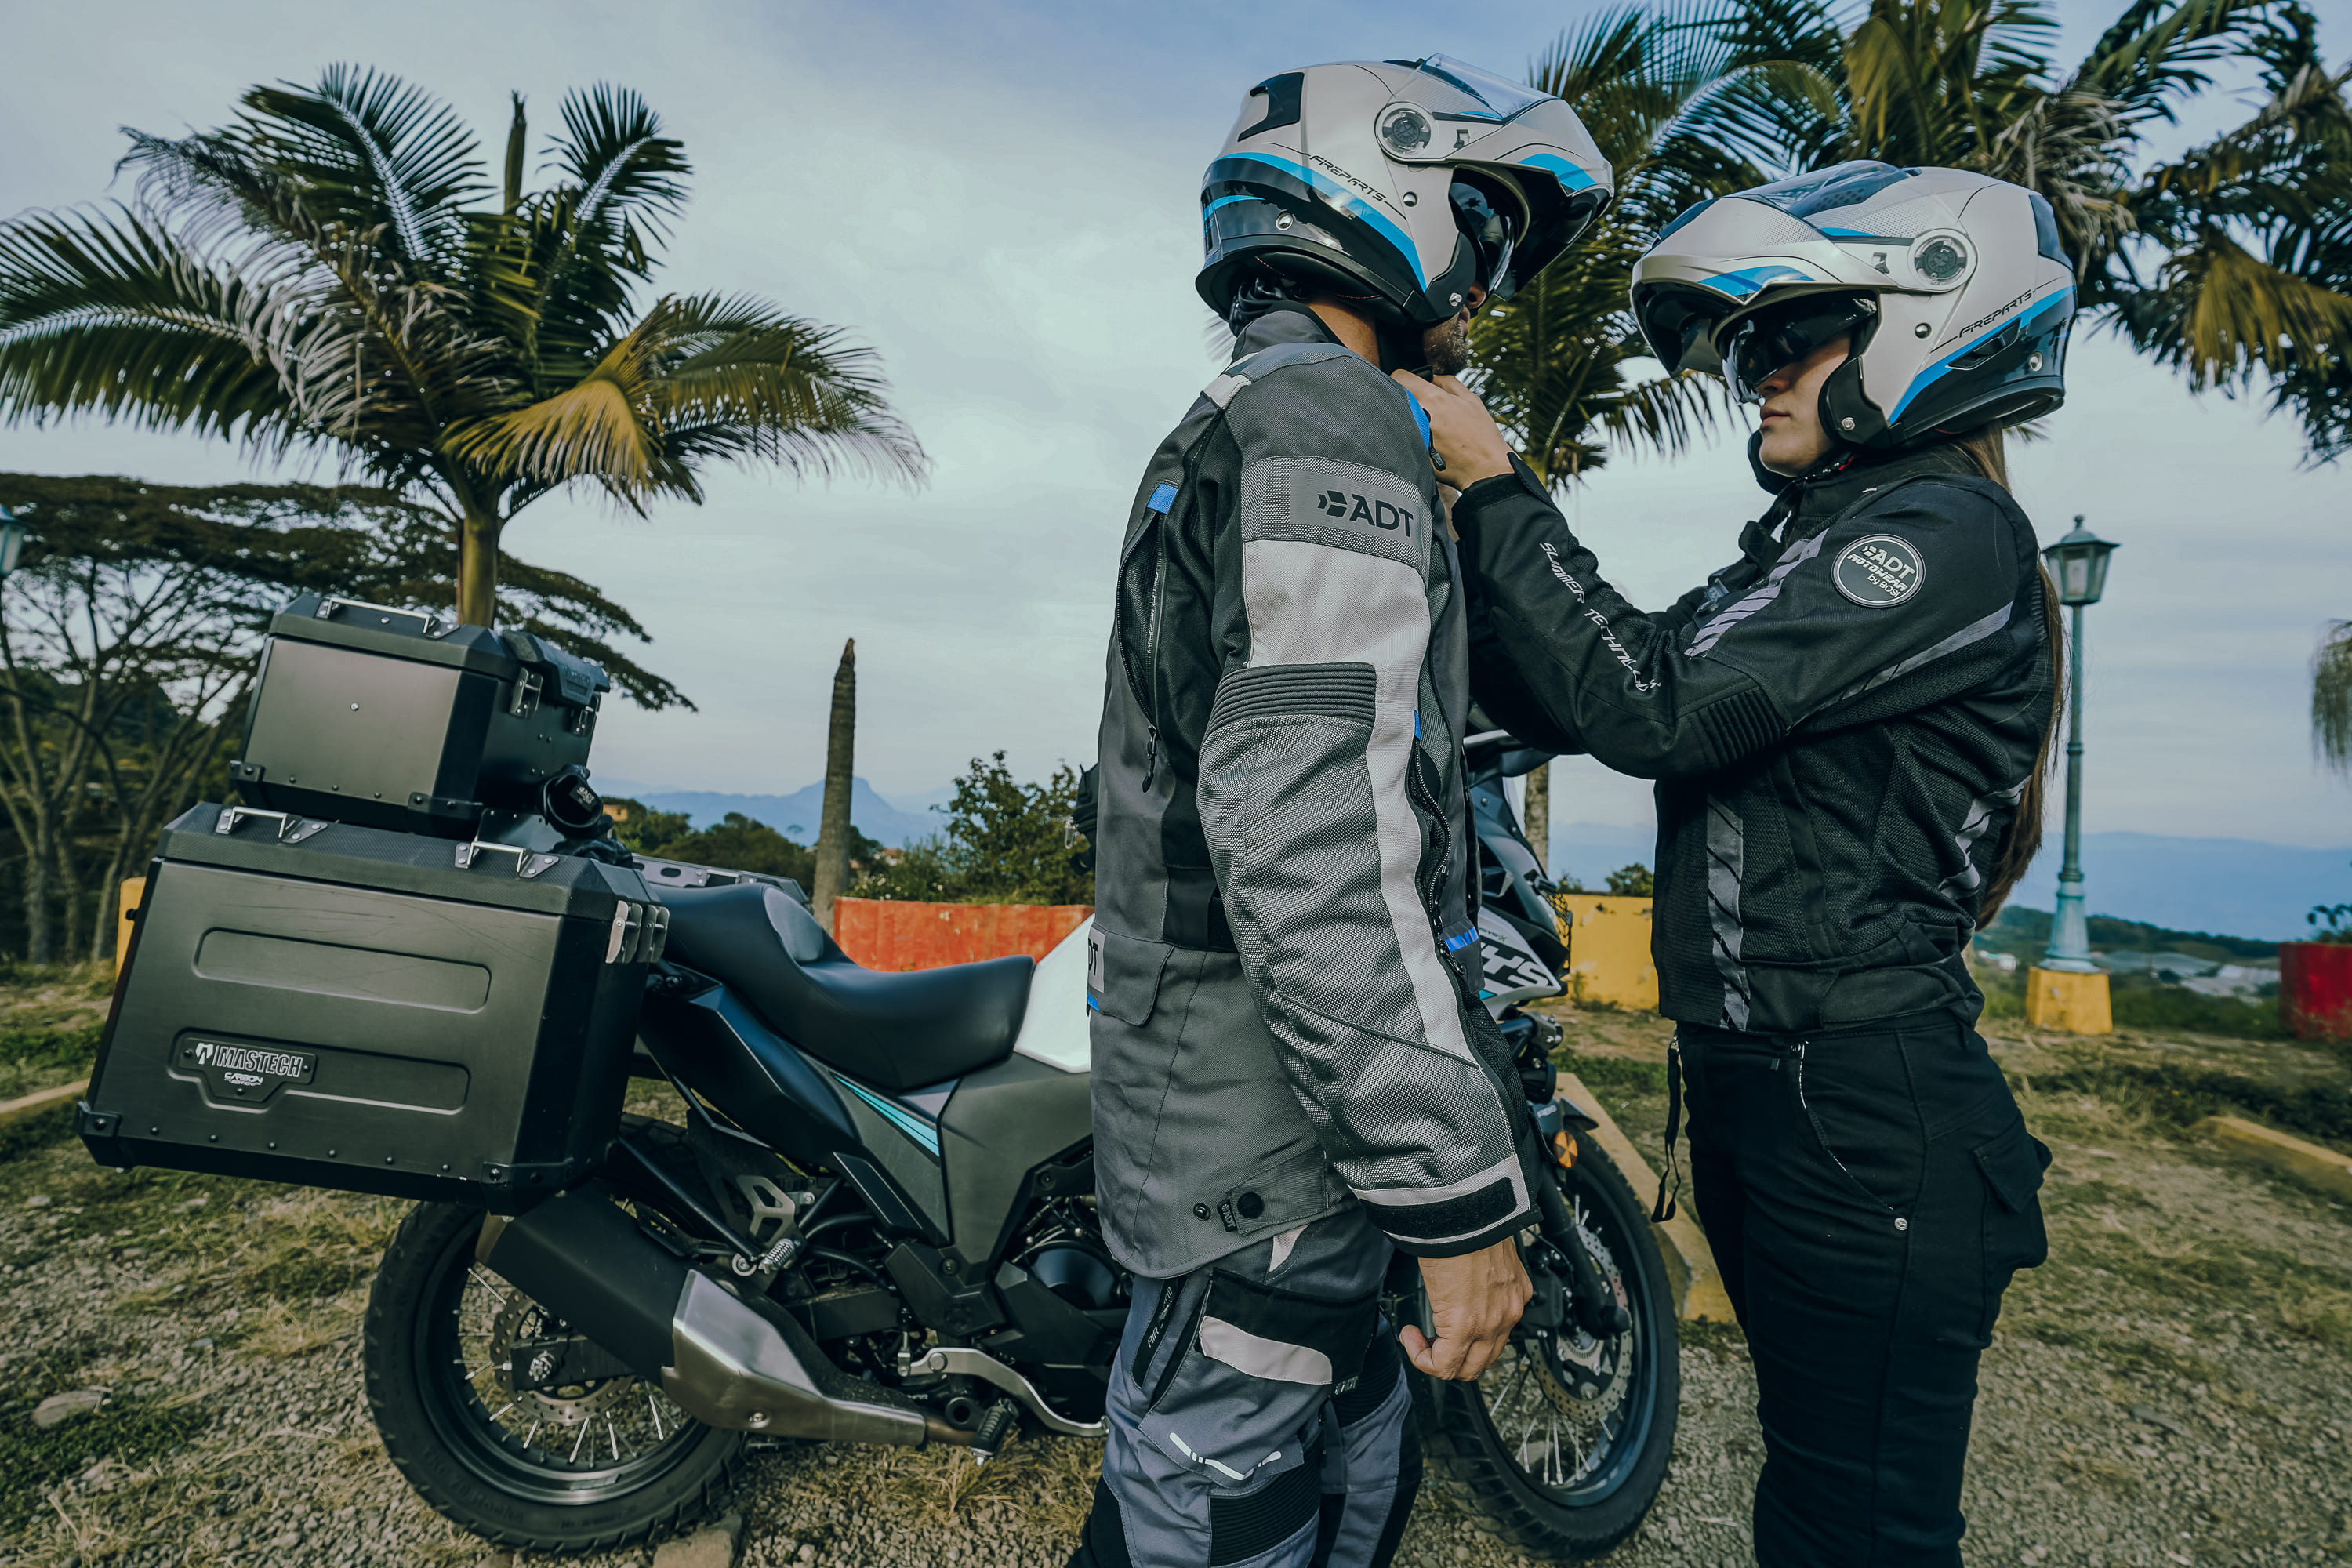 Requisitos de un casco de moto: ¿Cuál elegir?